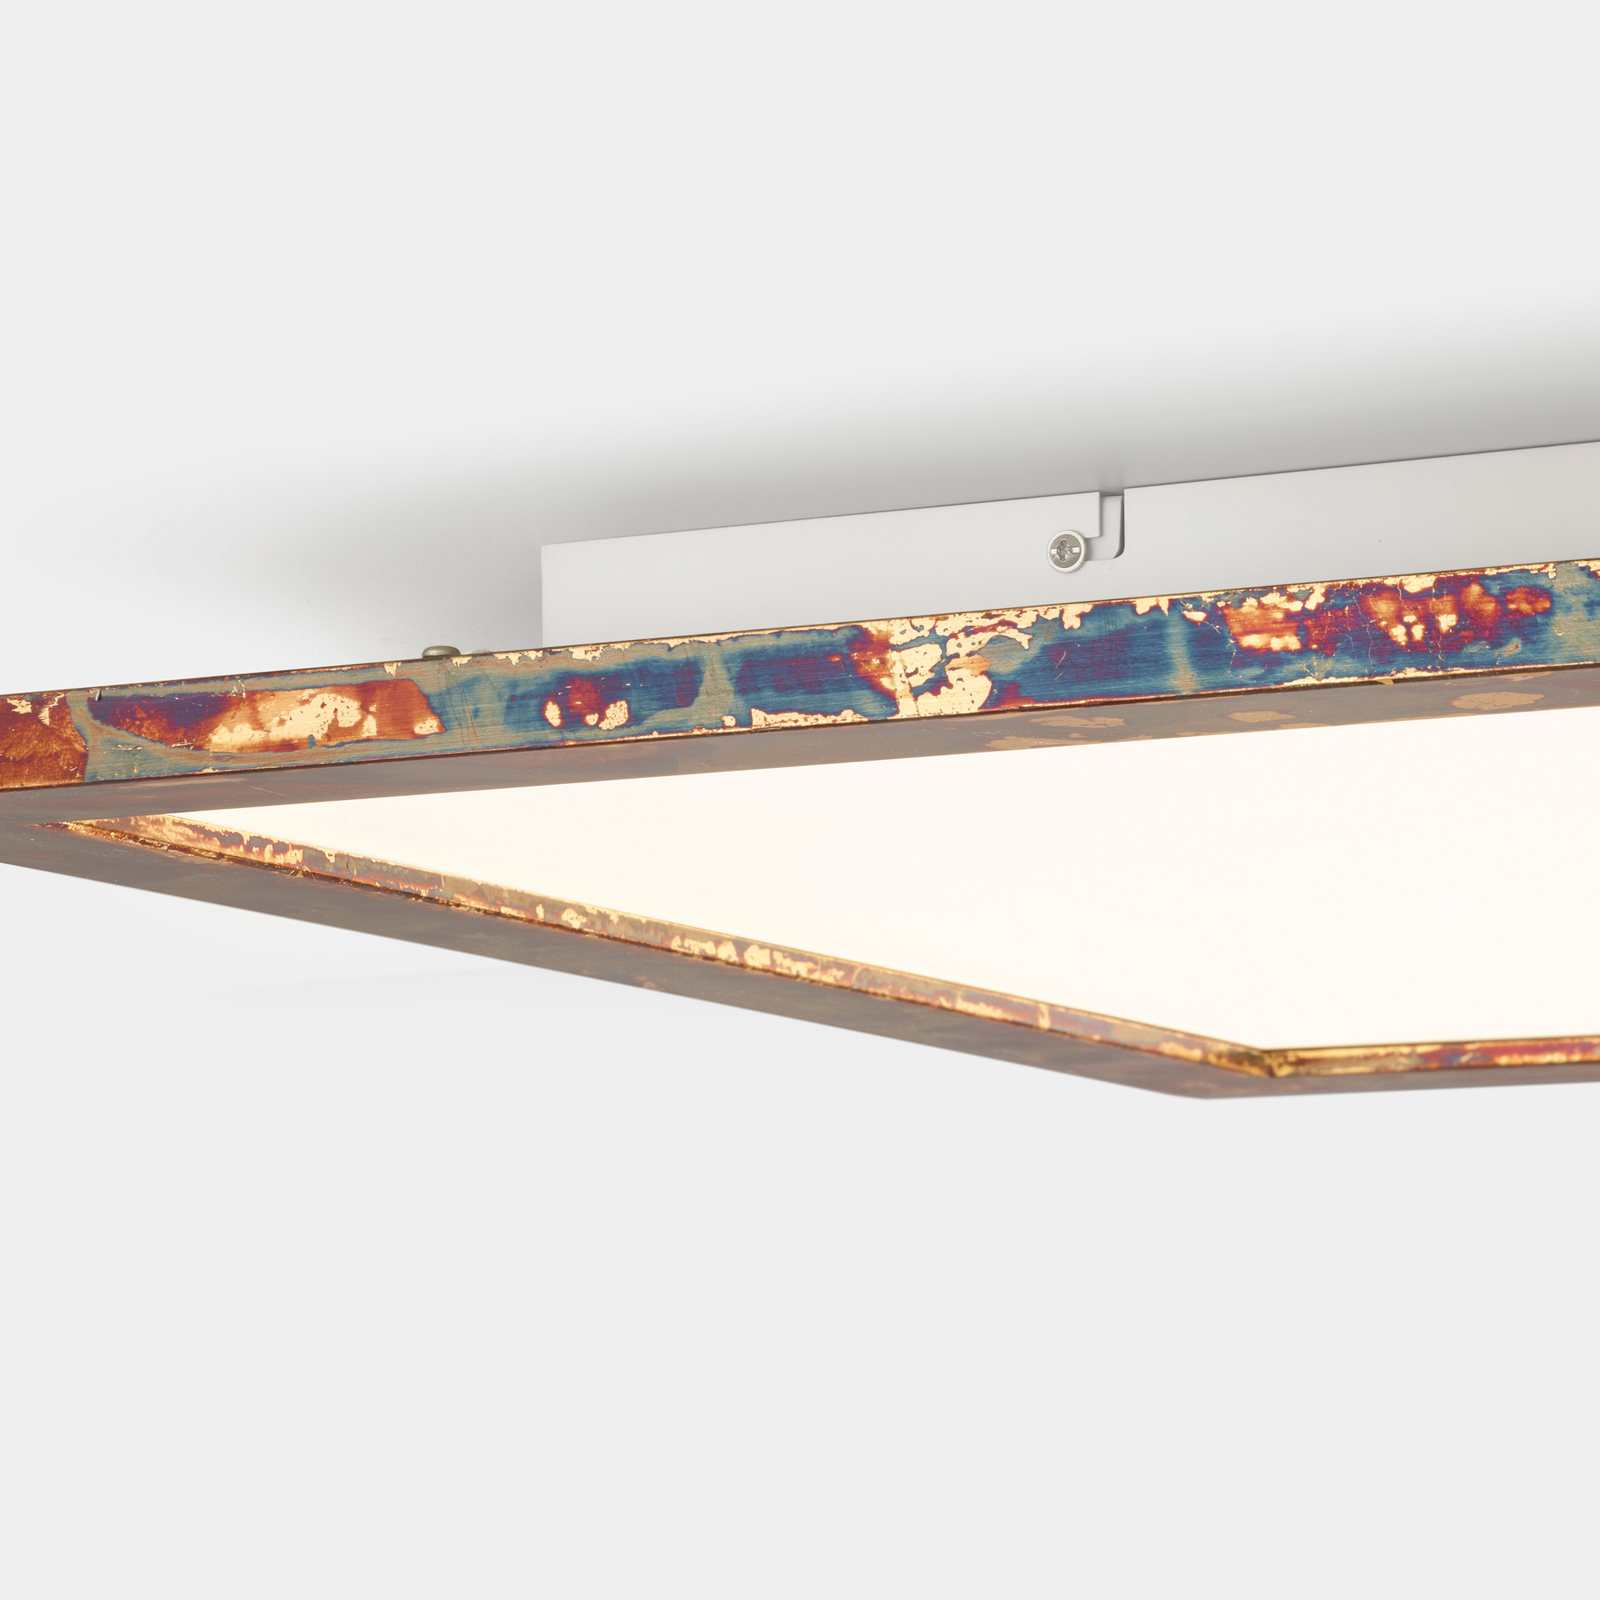 Quitani Aurinor LED panel, gold-coloured, 125 cm